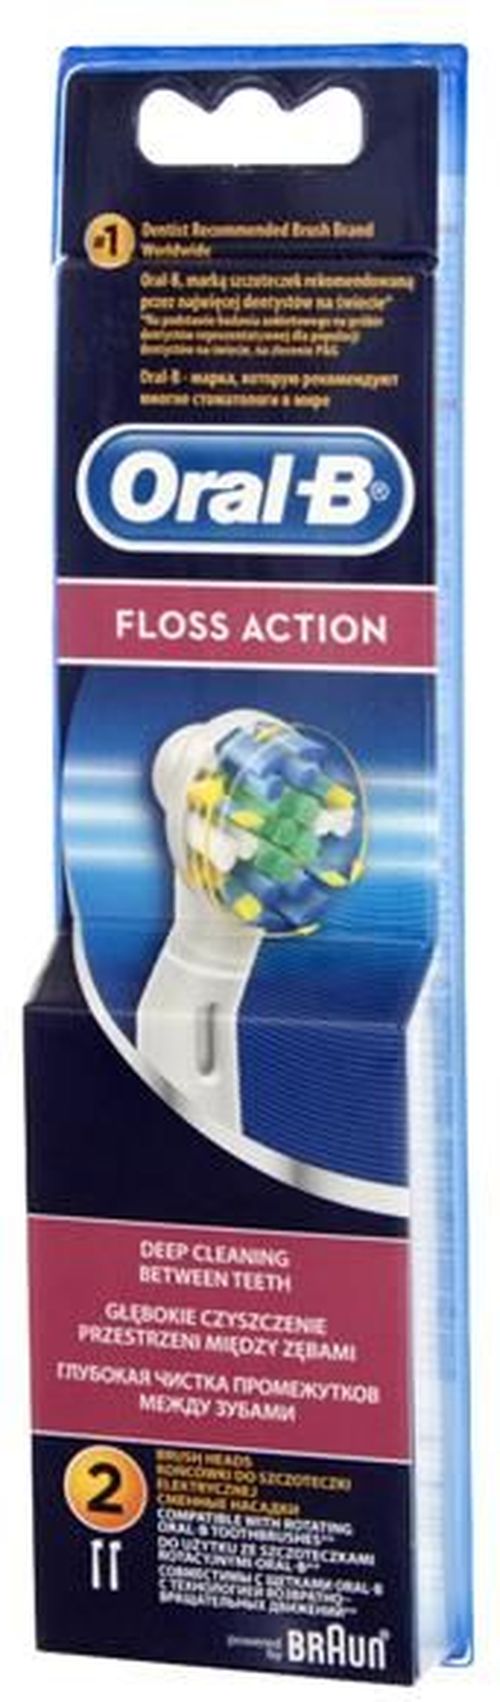 купить Сменная насадка для электрических зубных щеток Oral-B EB25 Floss Action в Кишинёве 